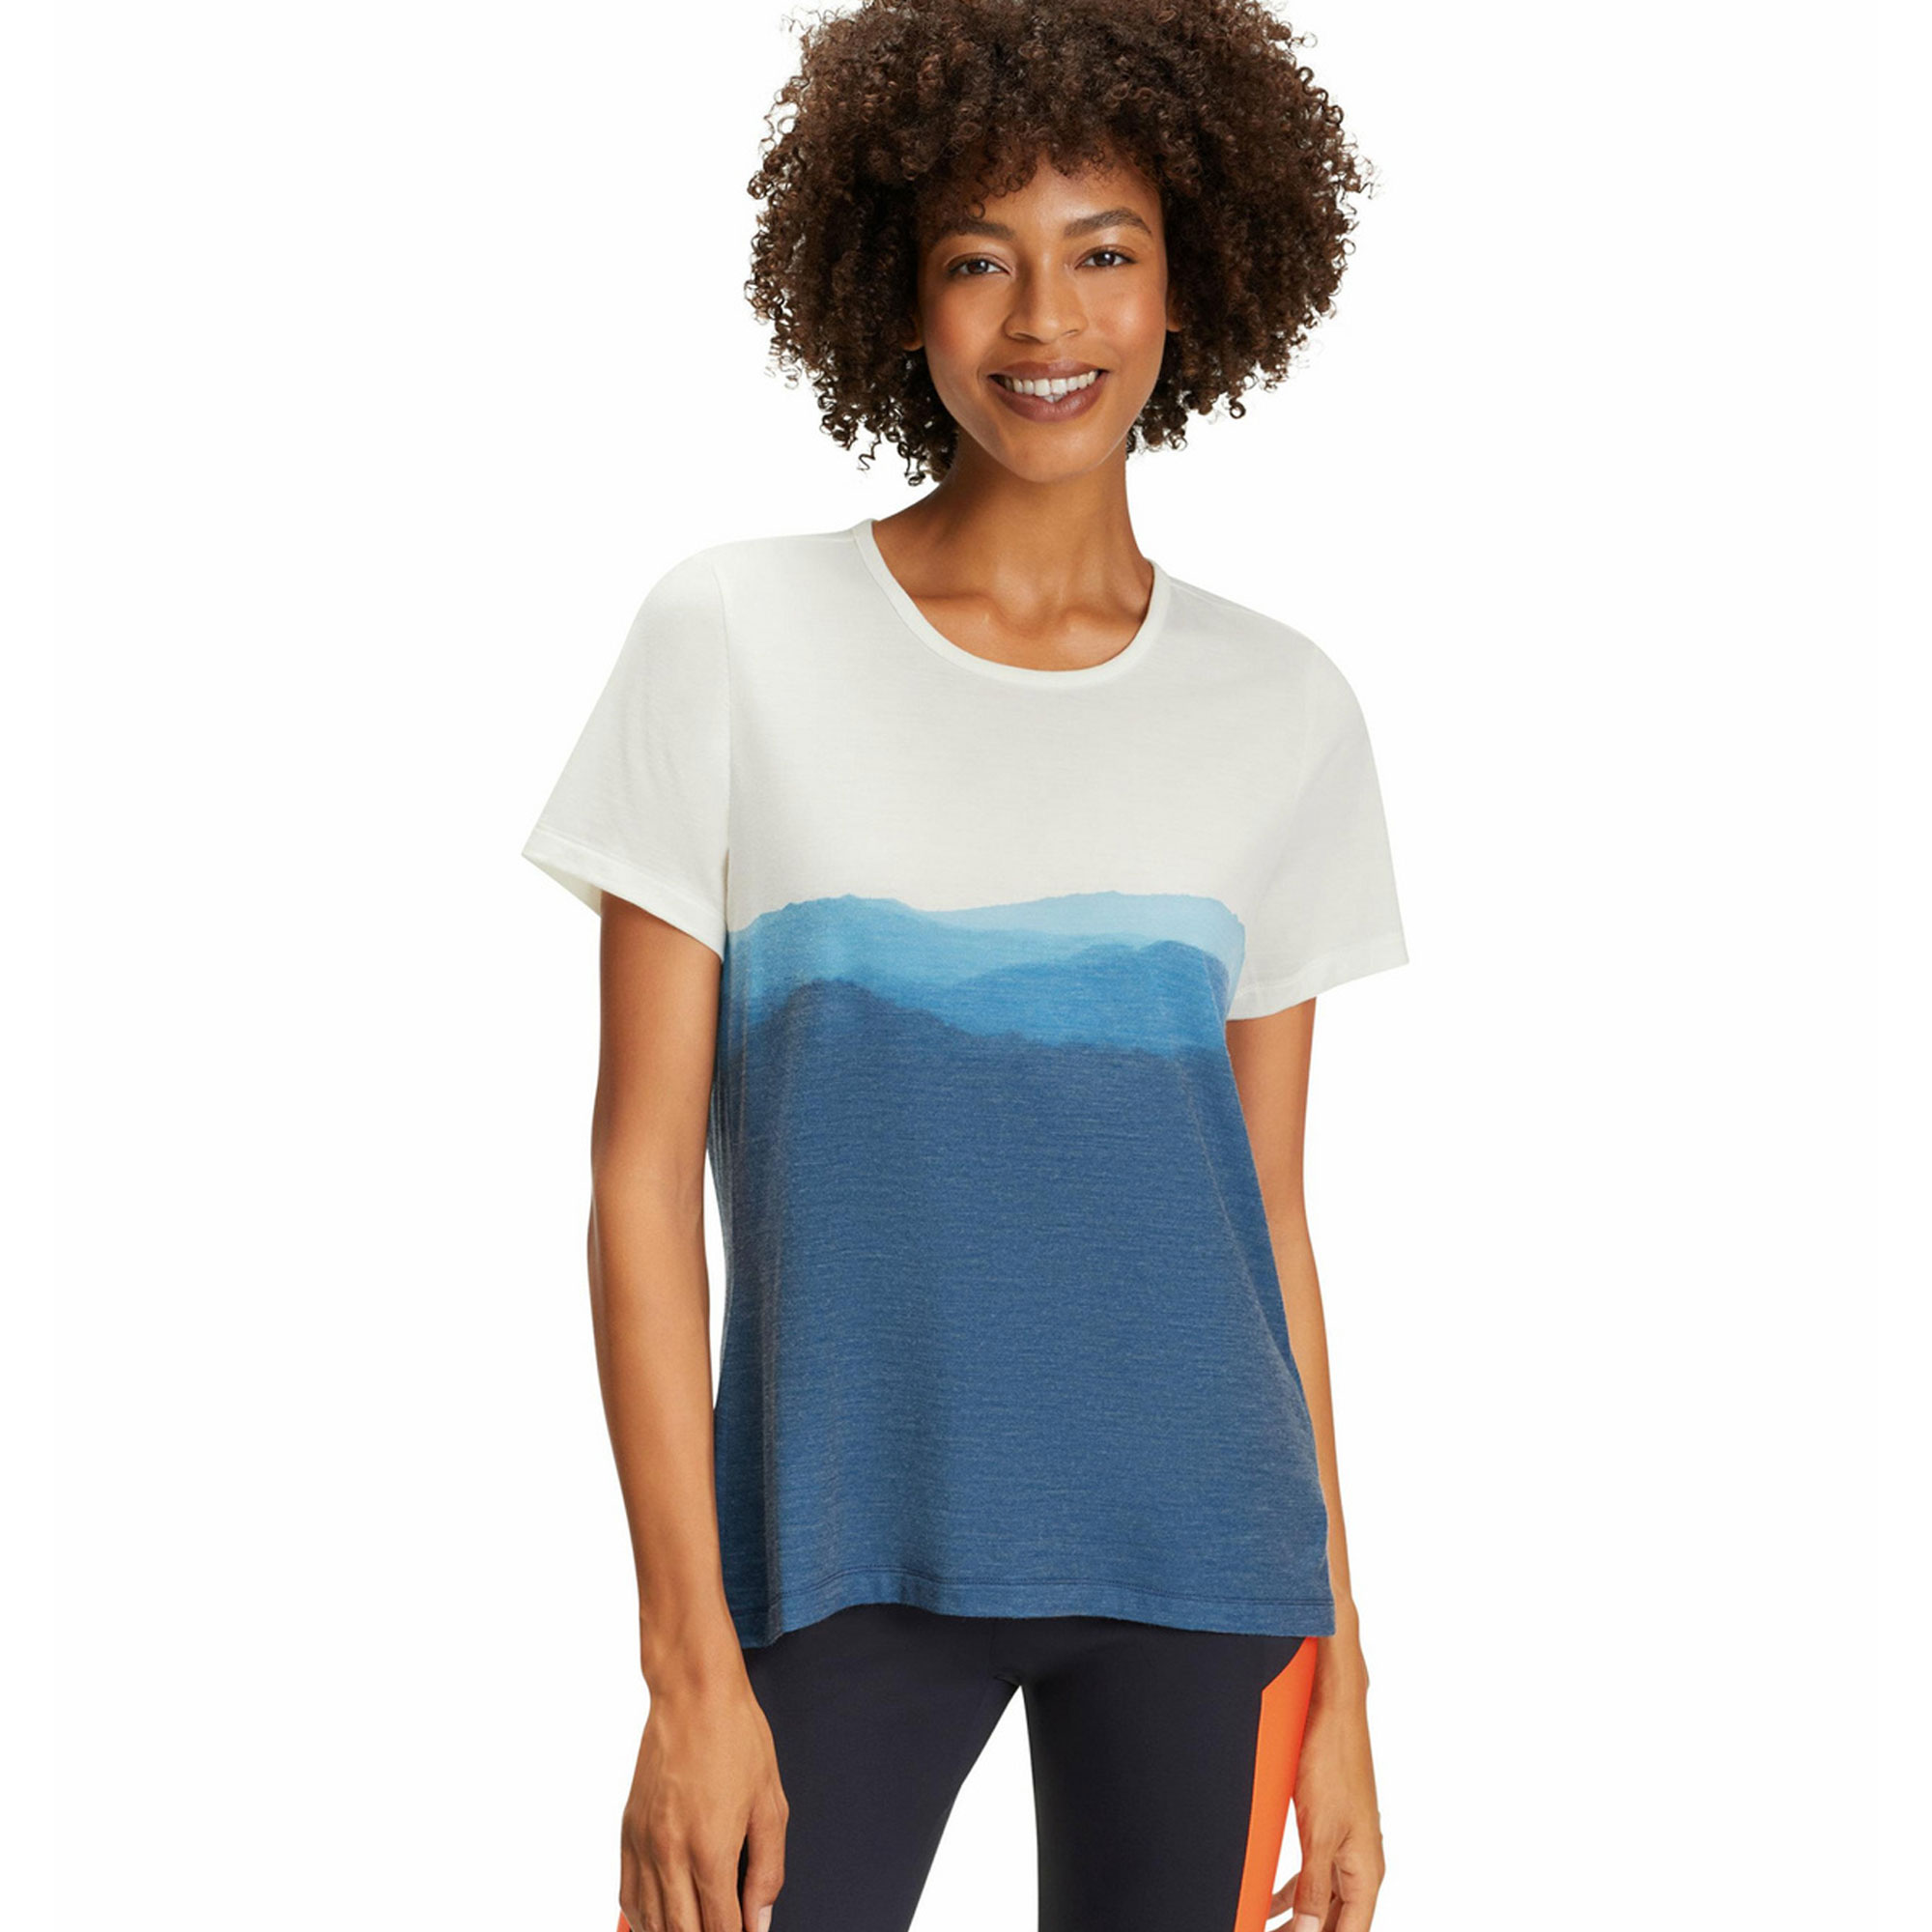 Camisetas de algodón y poliéster de alta calidad para mujer, camiseta ajustada suave con logotipo personalizado para mujer